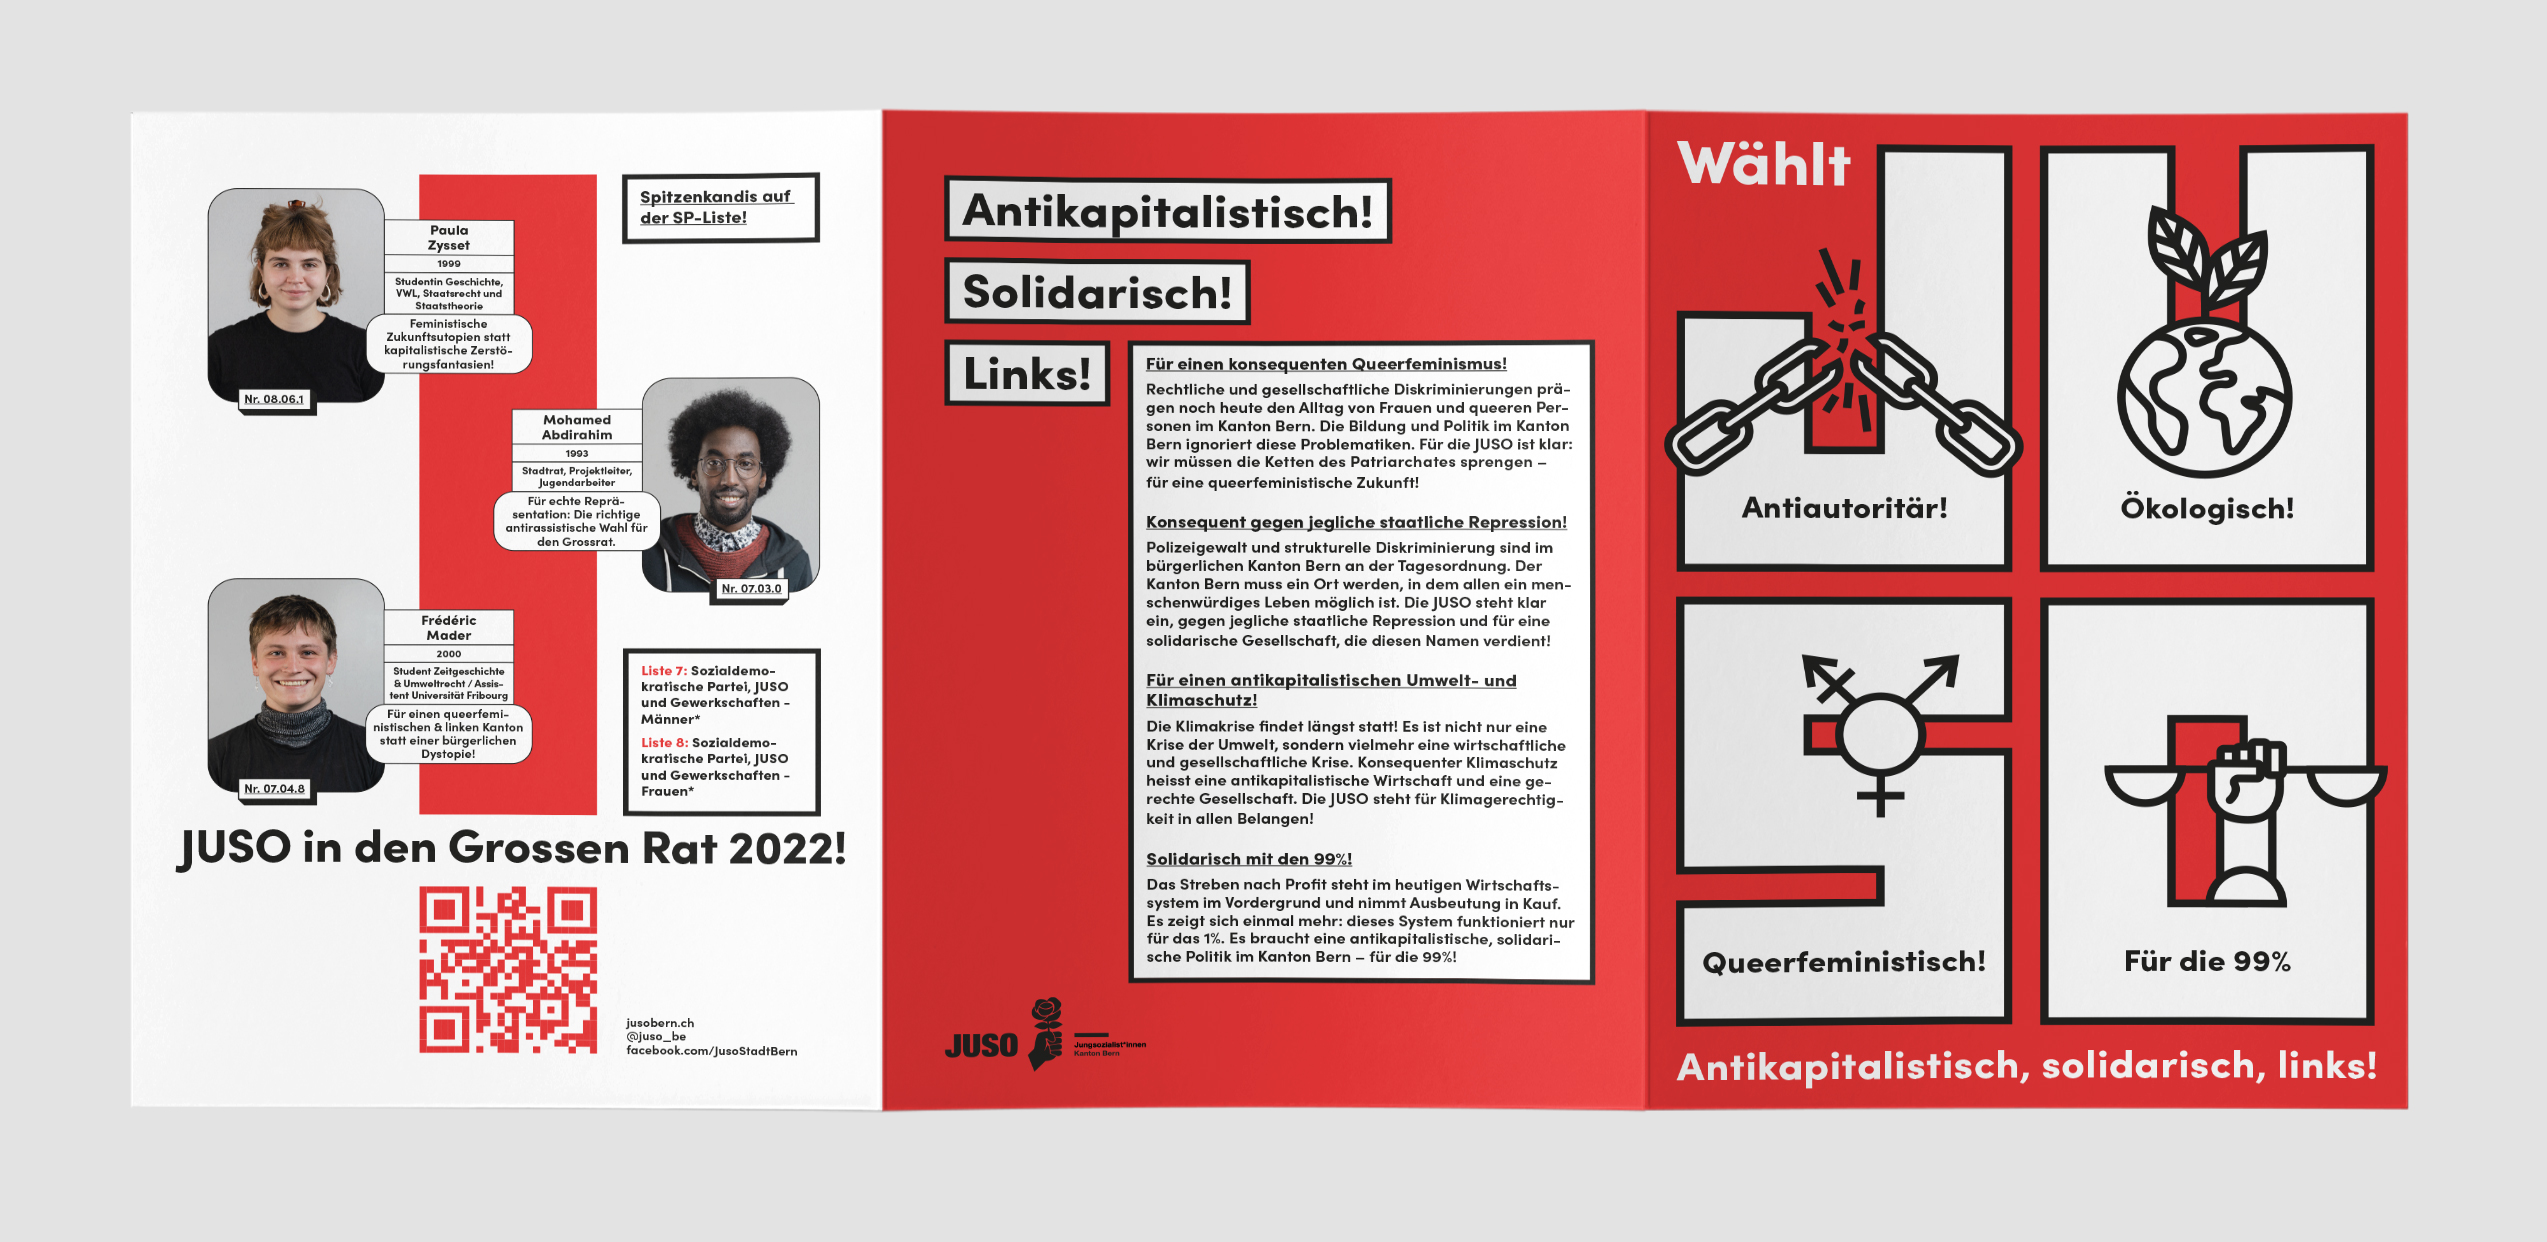 Juso Wahlkampagne für die Grossratswahlen im Kanton Bern